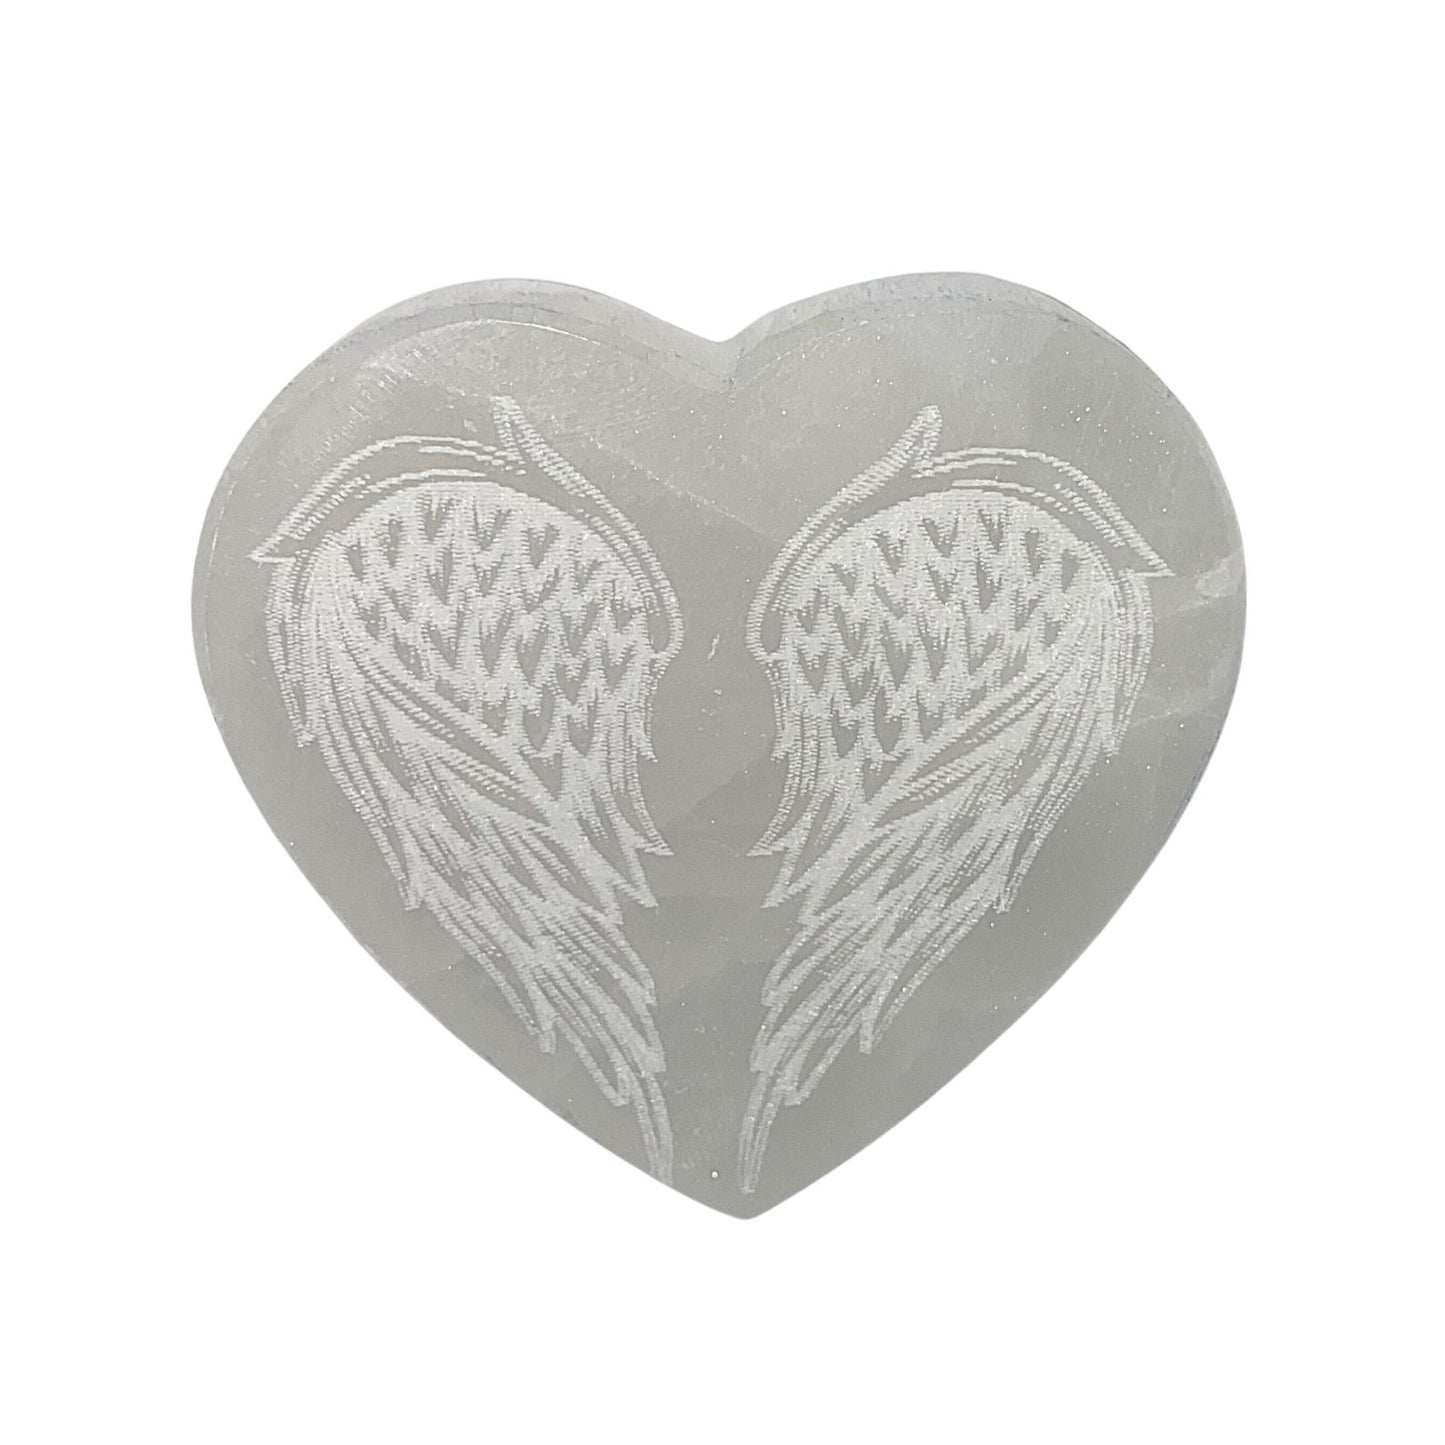 10cm Selenite Heart Engraved charging disc - Angel Wings